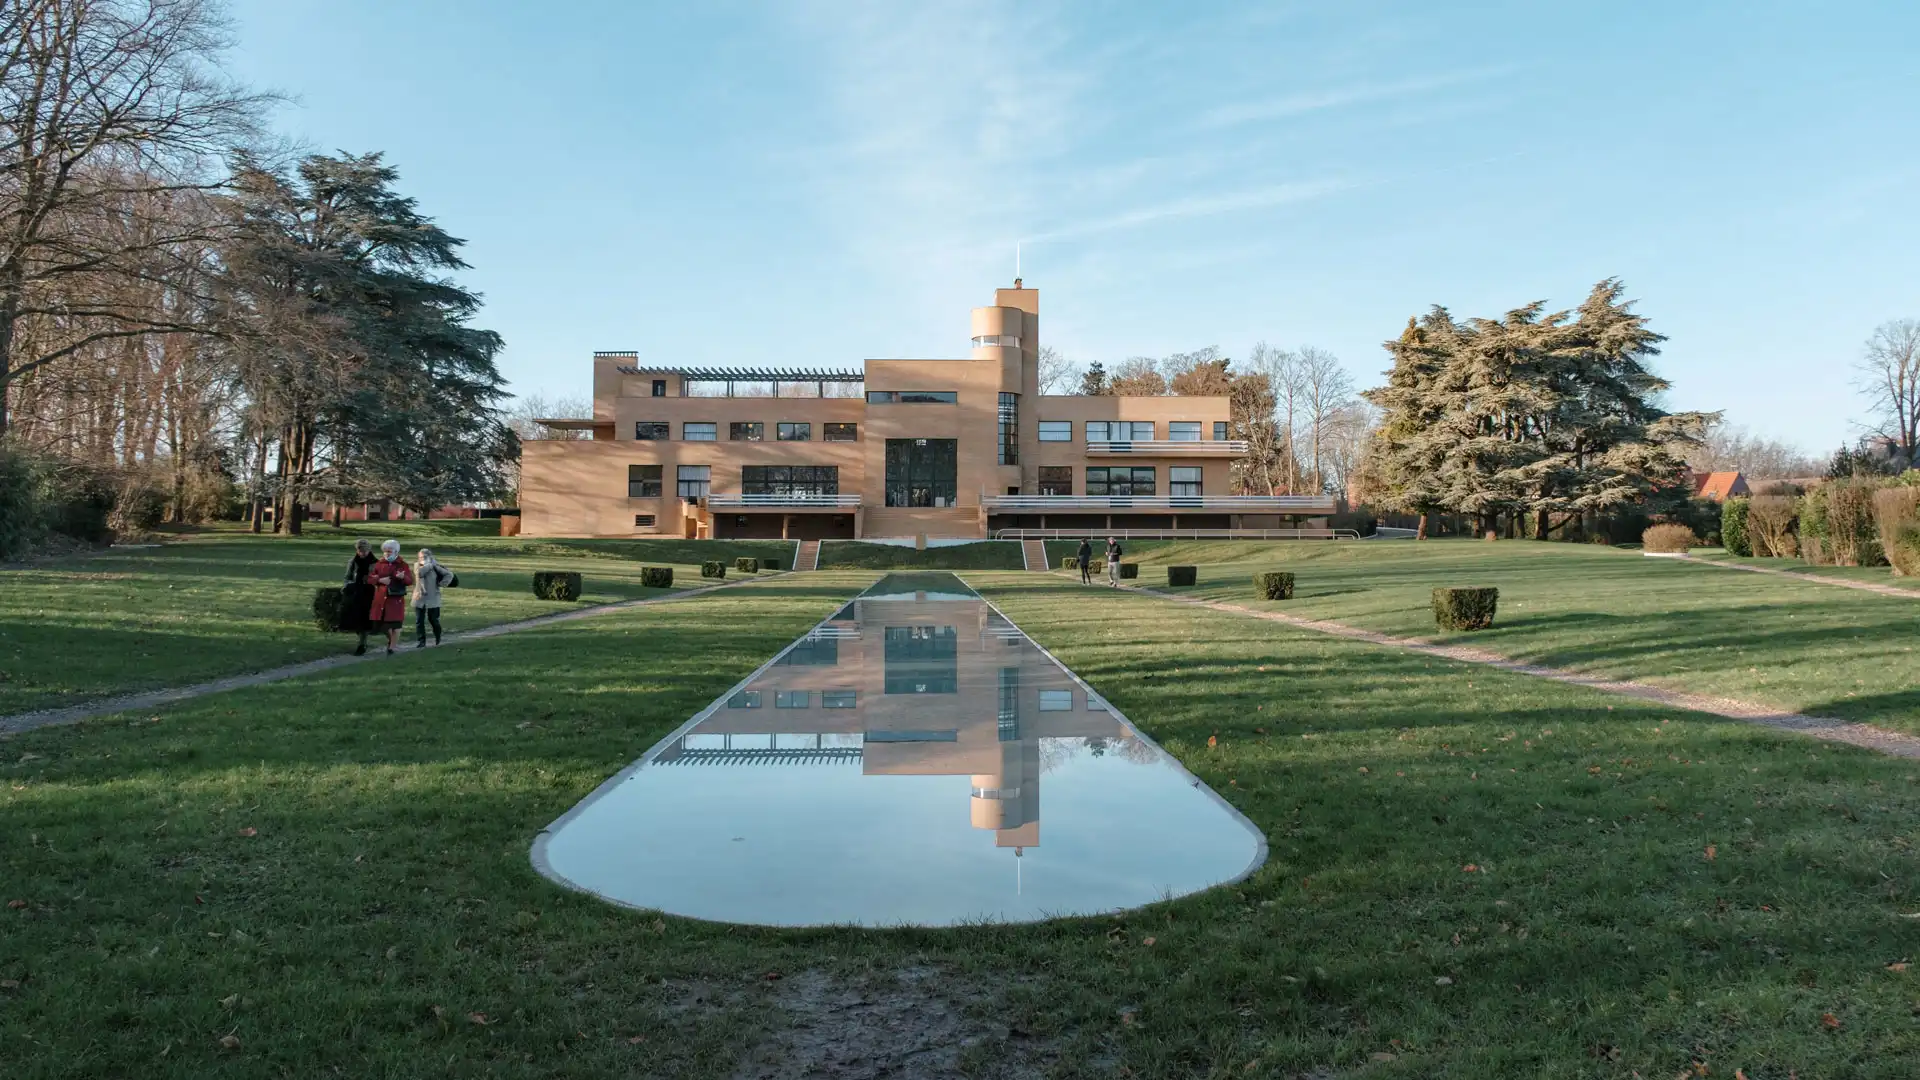 Villa Cavrois à Roubaix vue depuis le miroir d'eau